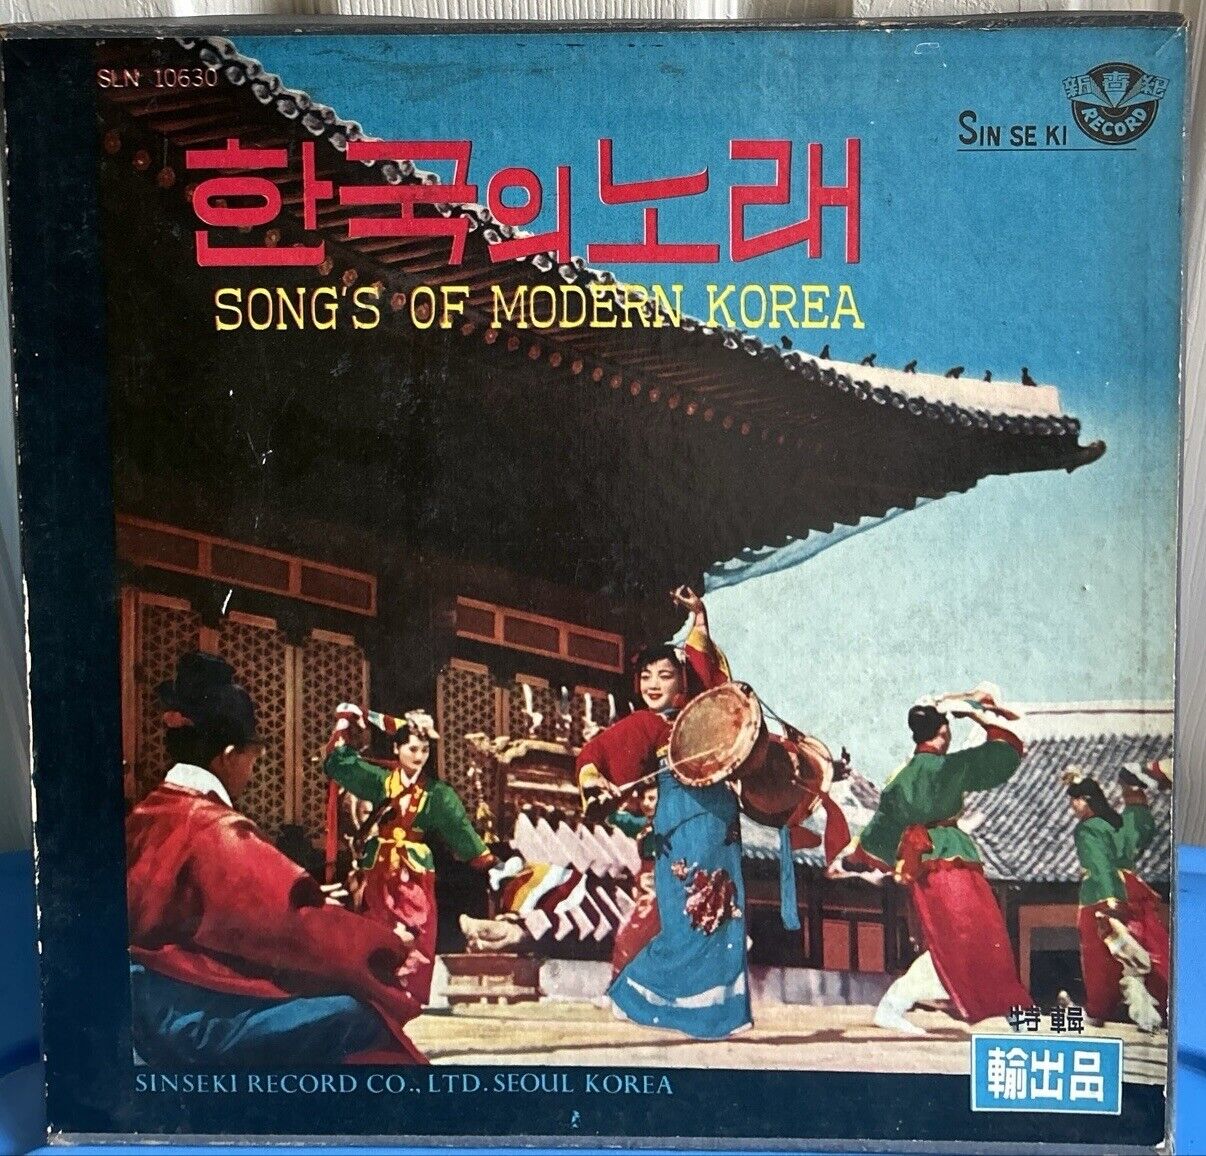 Songs Of Modern Korea SLN 10630 Sin Se Ki Record Co, LTD. Seoul Korea Excellent